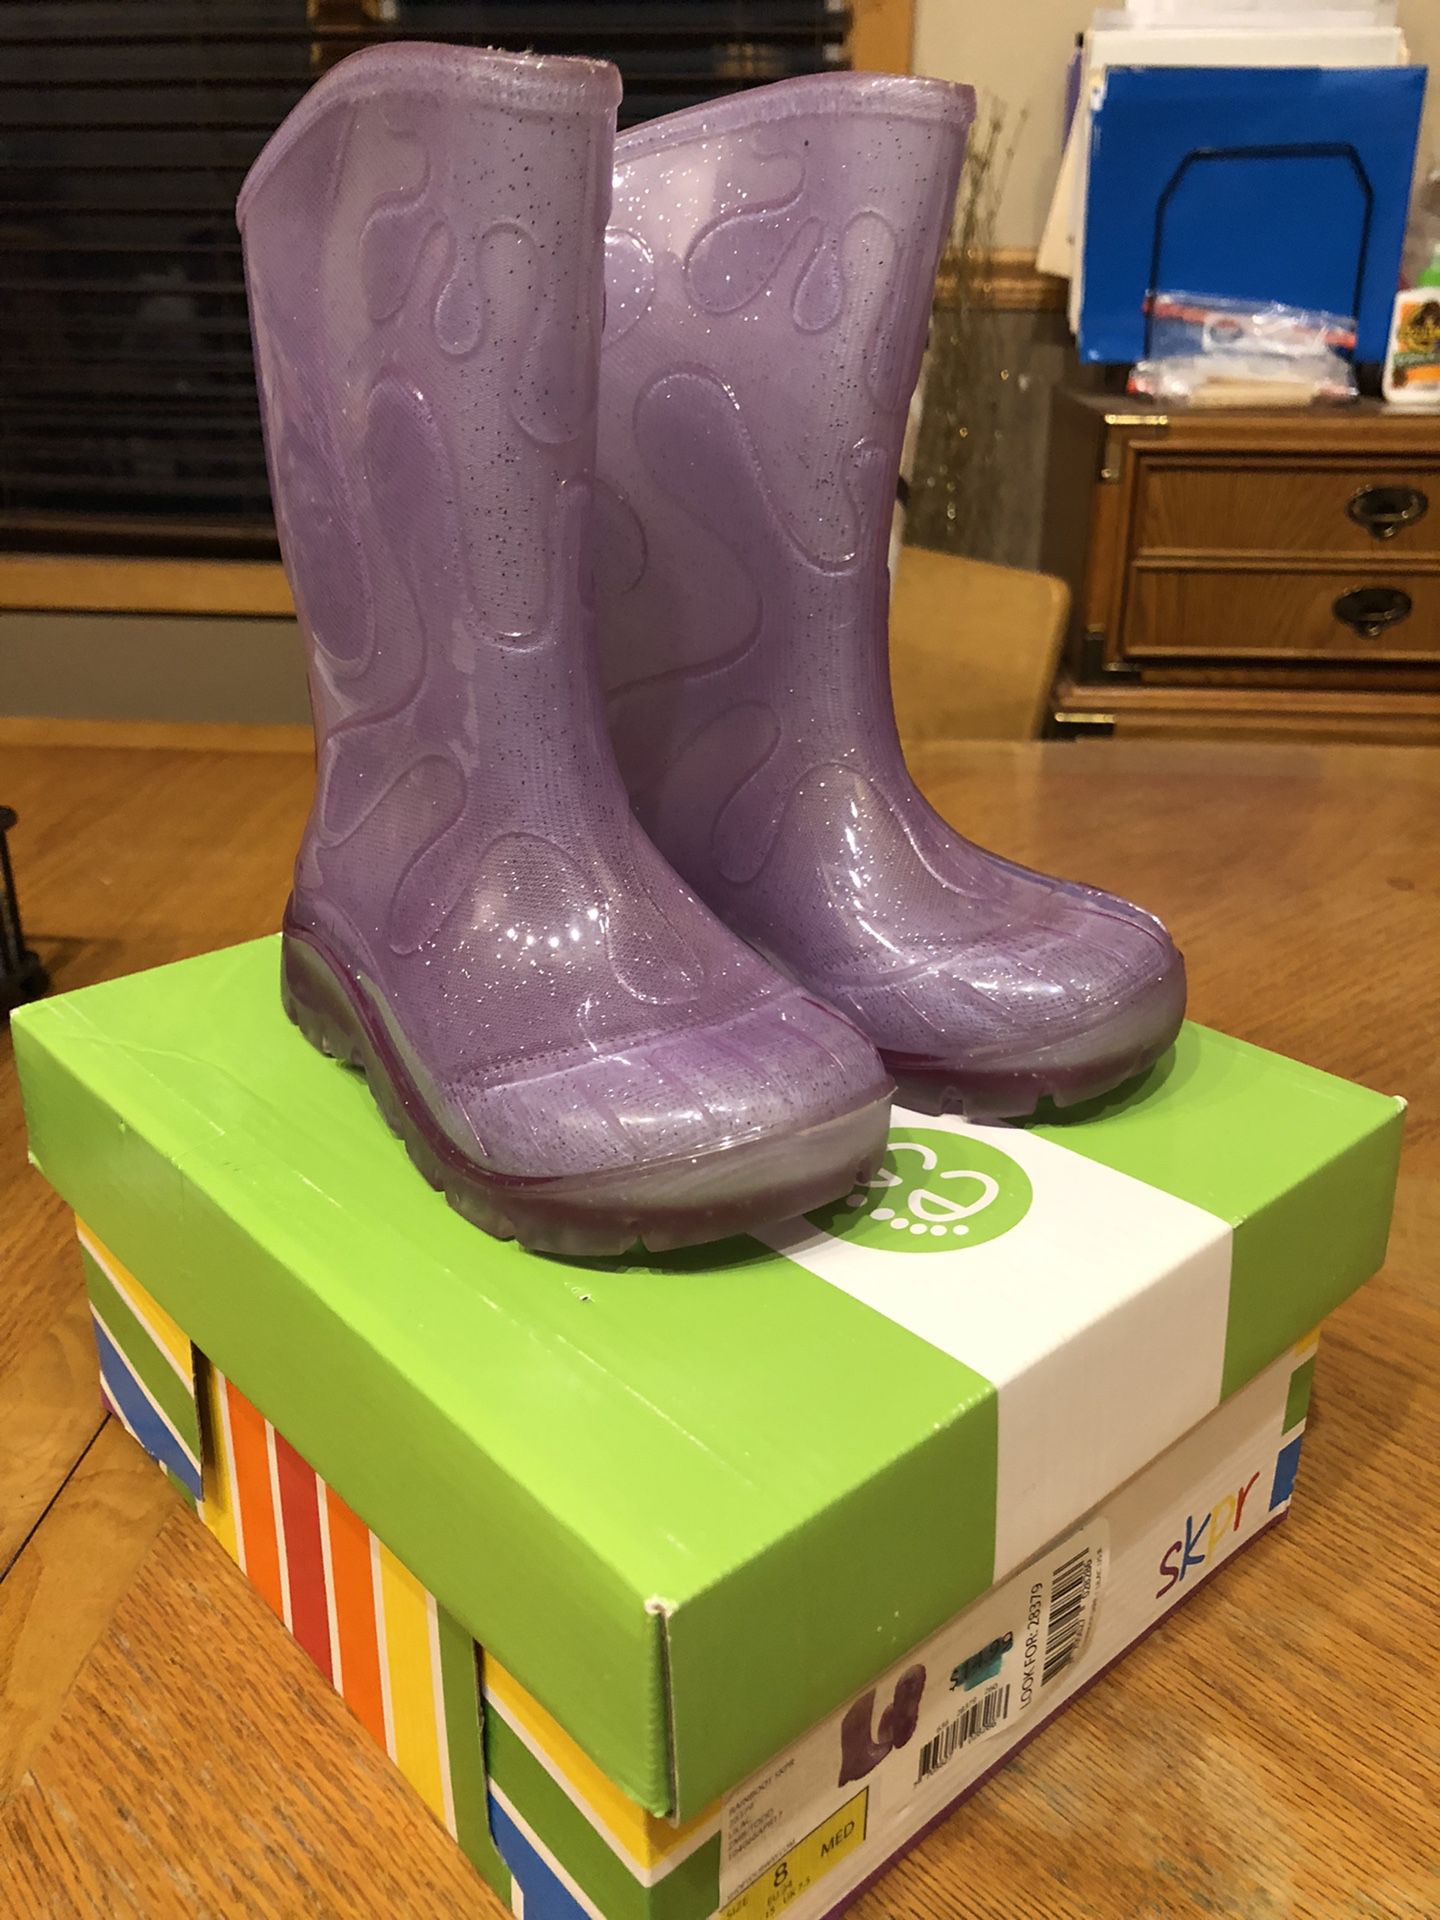 Little girls size 8 rain boots